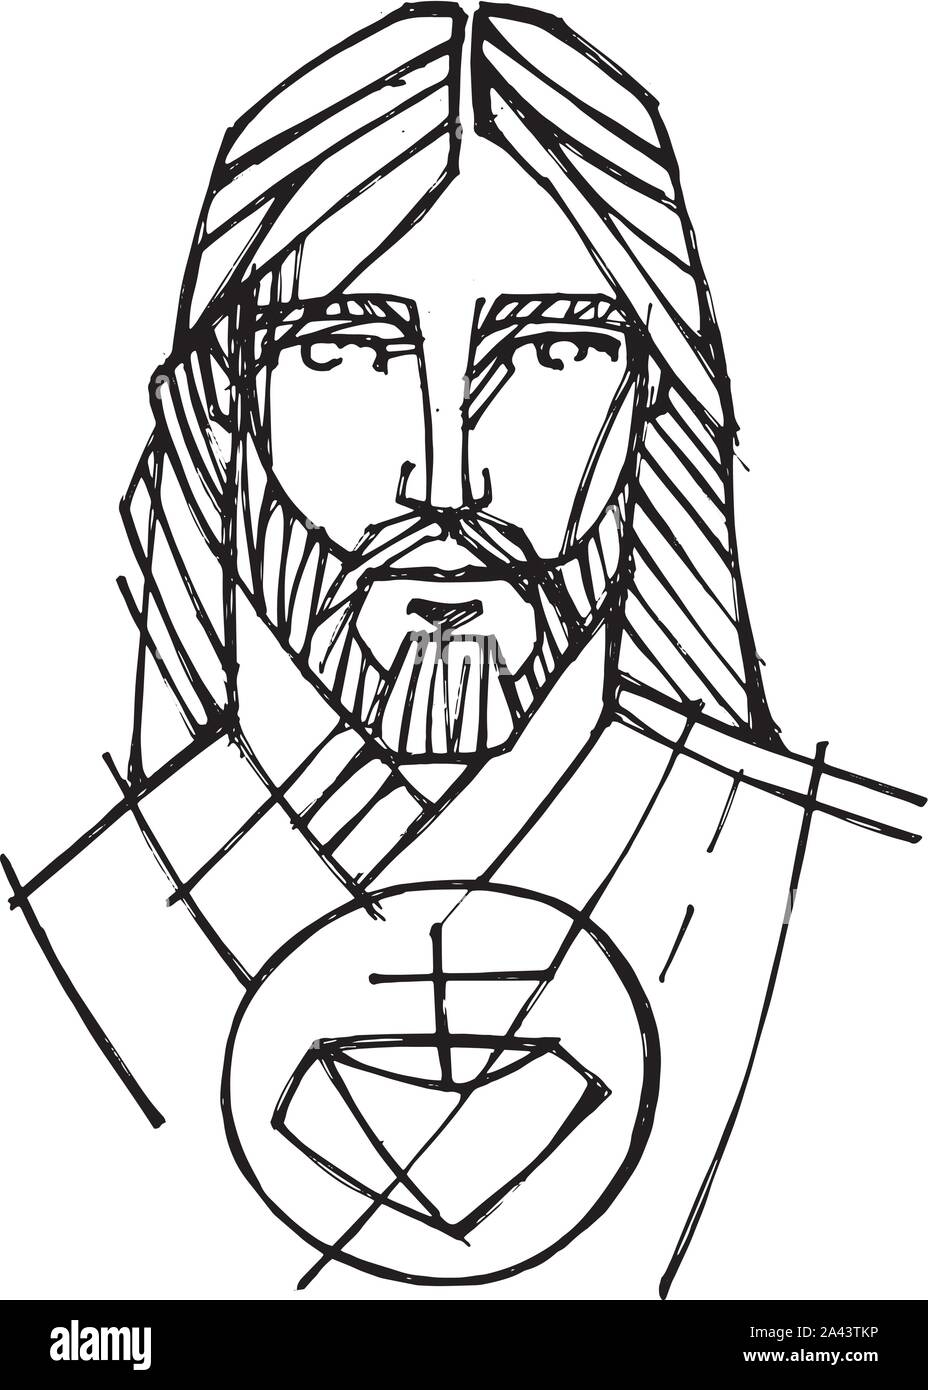 Disegnata a mano illustrazione vettoriale o di disegno di Gesù Cristo faccia Illustrazione Vettoriale